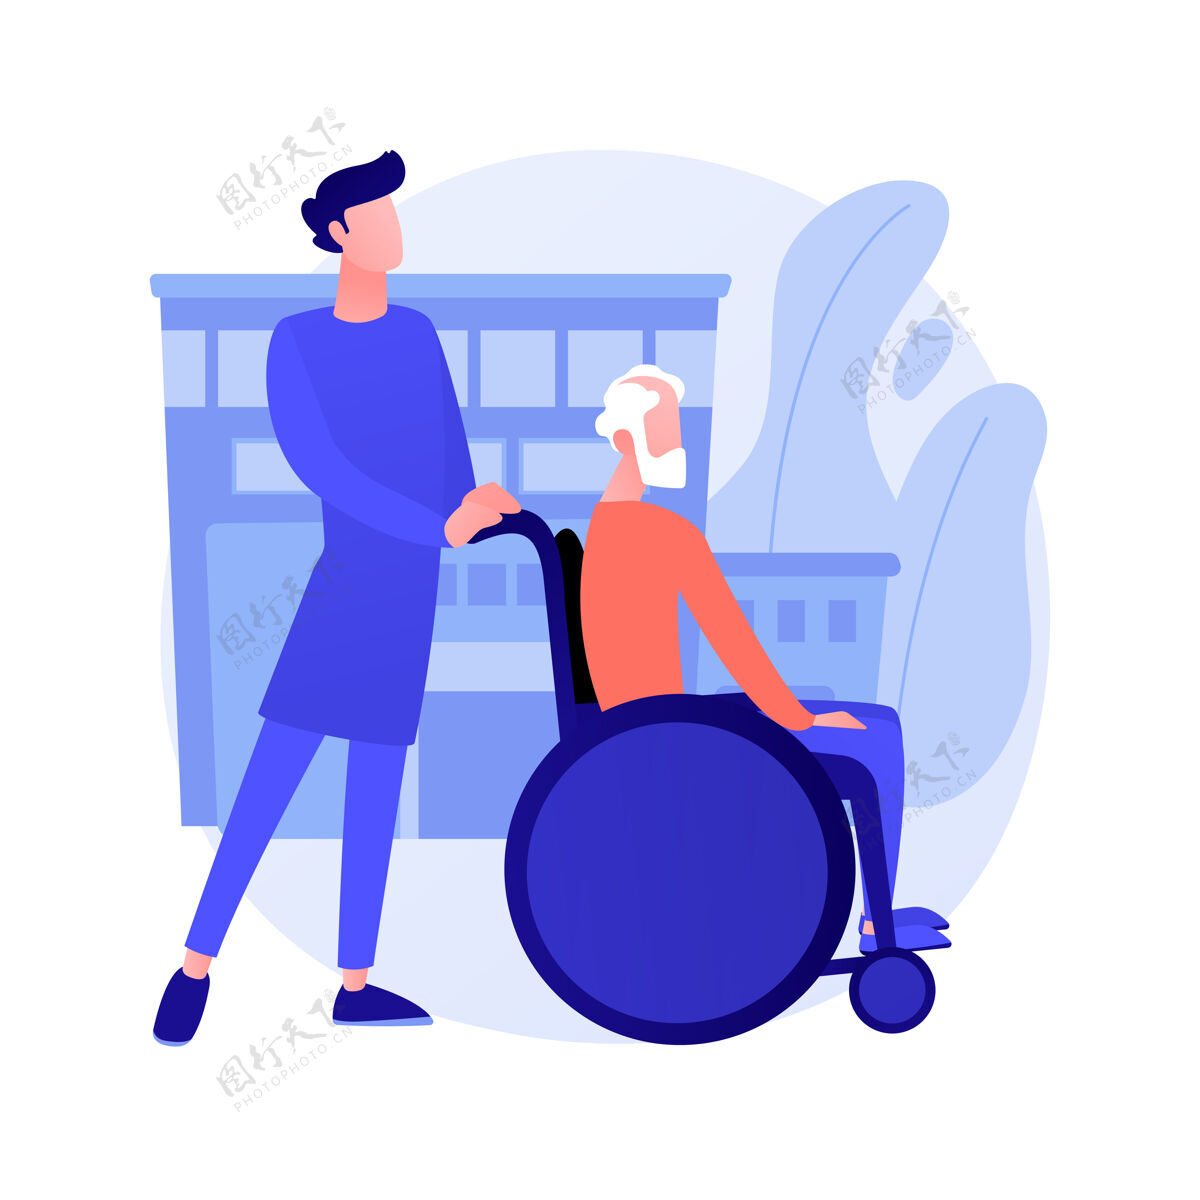 轮椅养老抽象概念向量插图养老护理 老年思乡护理 护理服务 轮椅上的快乐 家庭支持 退休人员 养老院抽象隐喻老人医疗保健步行者